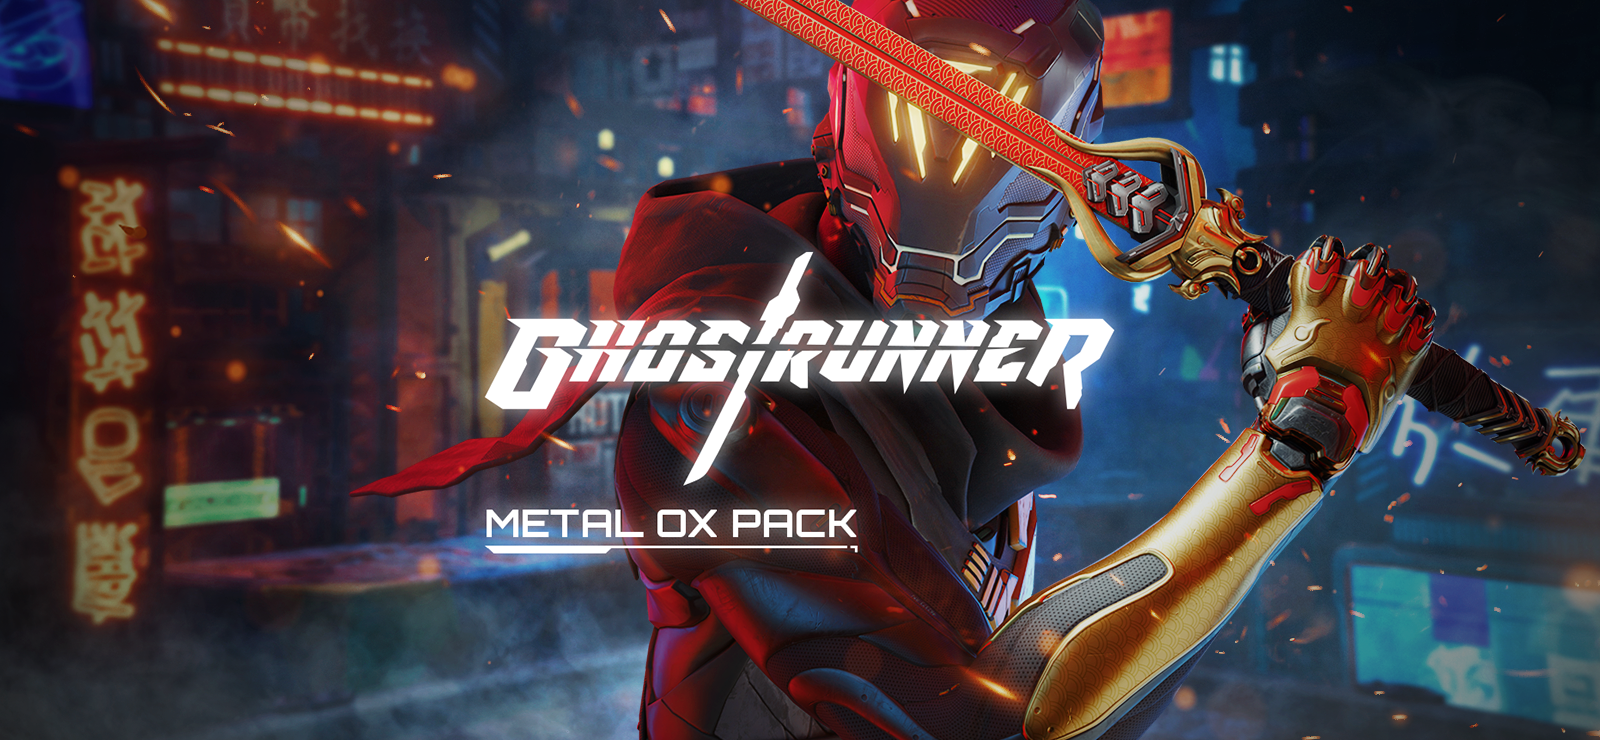 Ghostrunner Metal Ox Pack